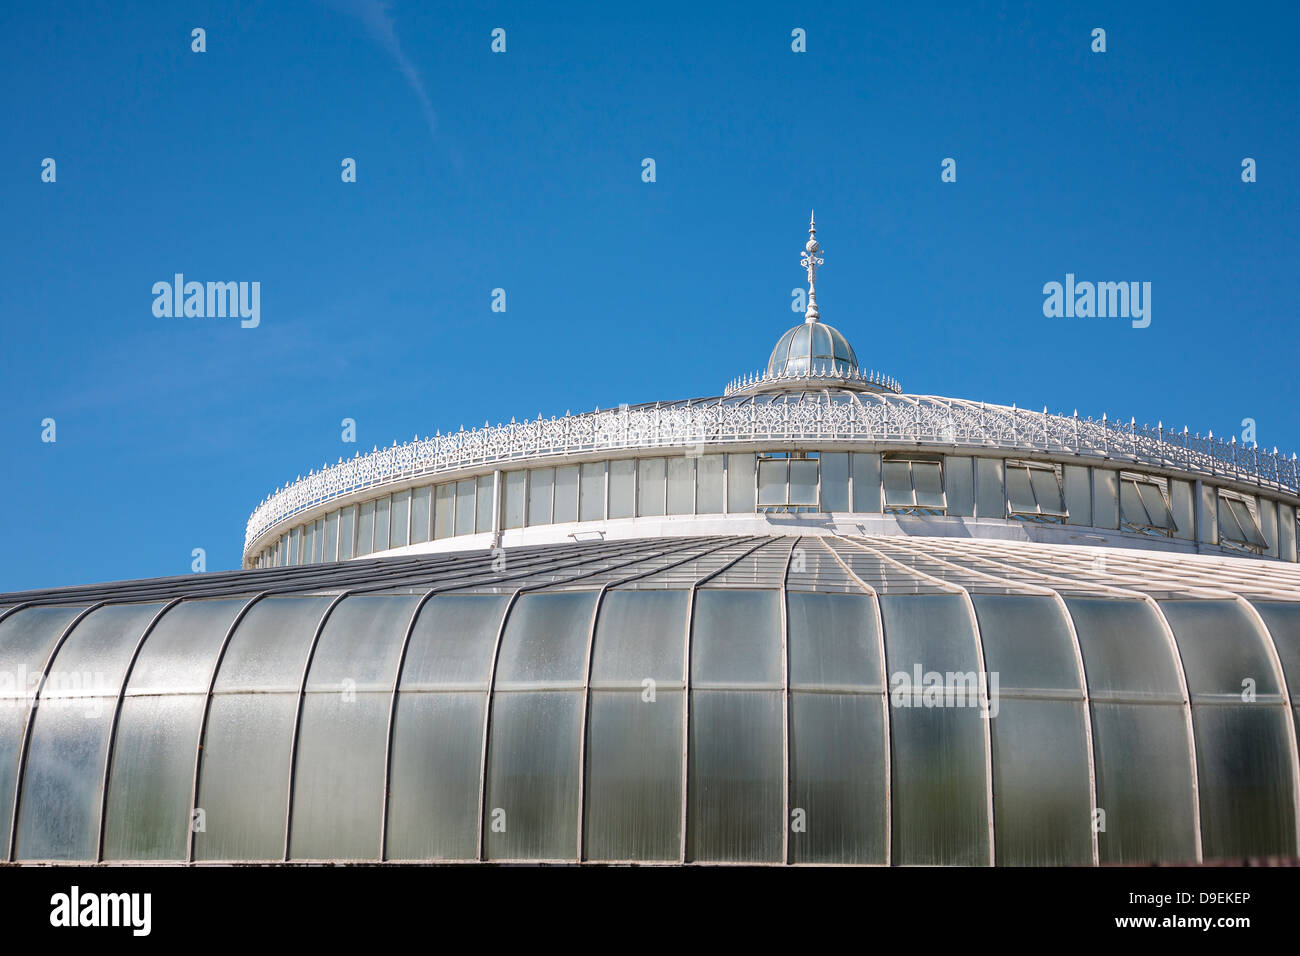 Il tetto del palazzo di kibble nel Giardino Botanico in Glasgow. Foto Stock